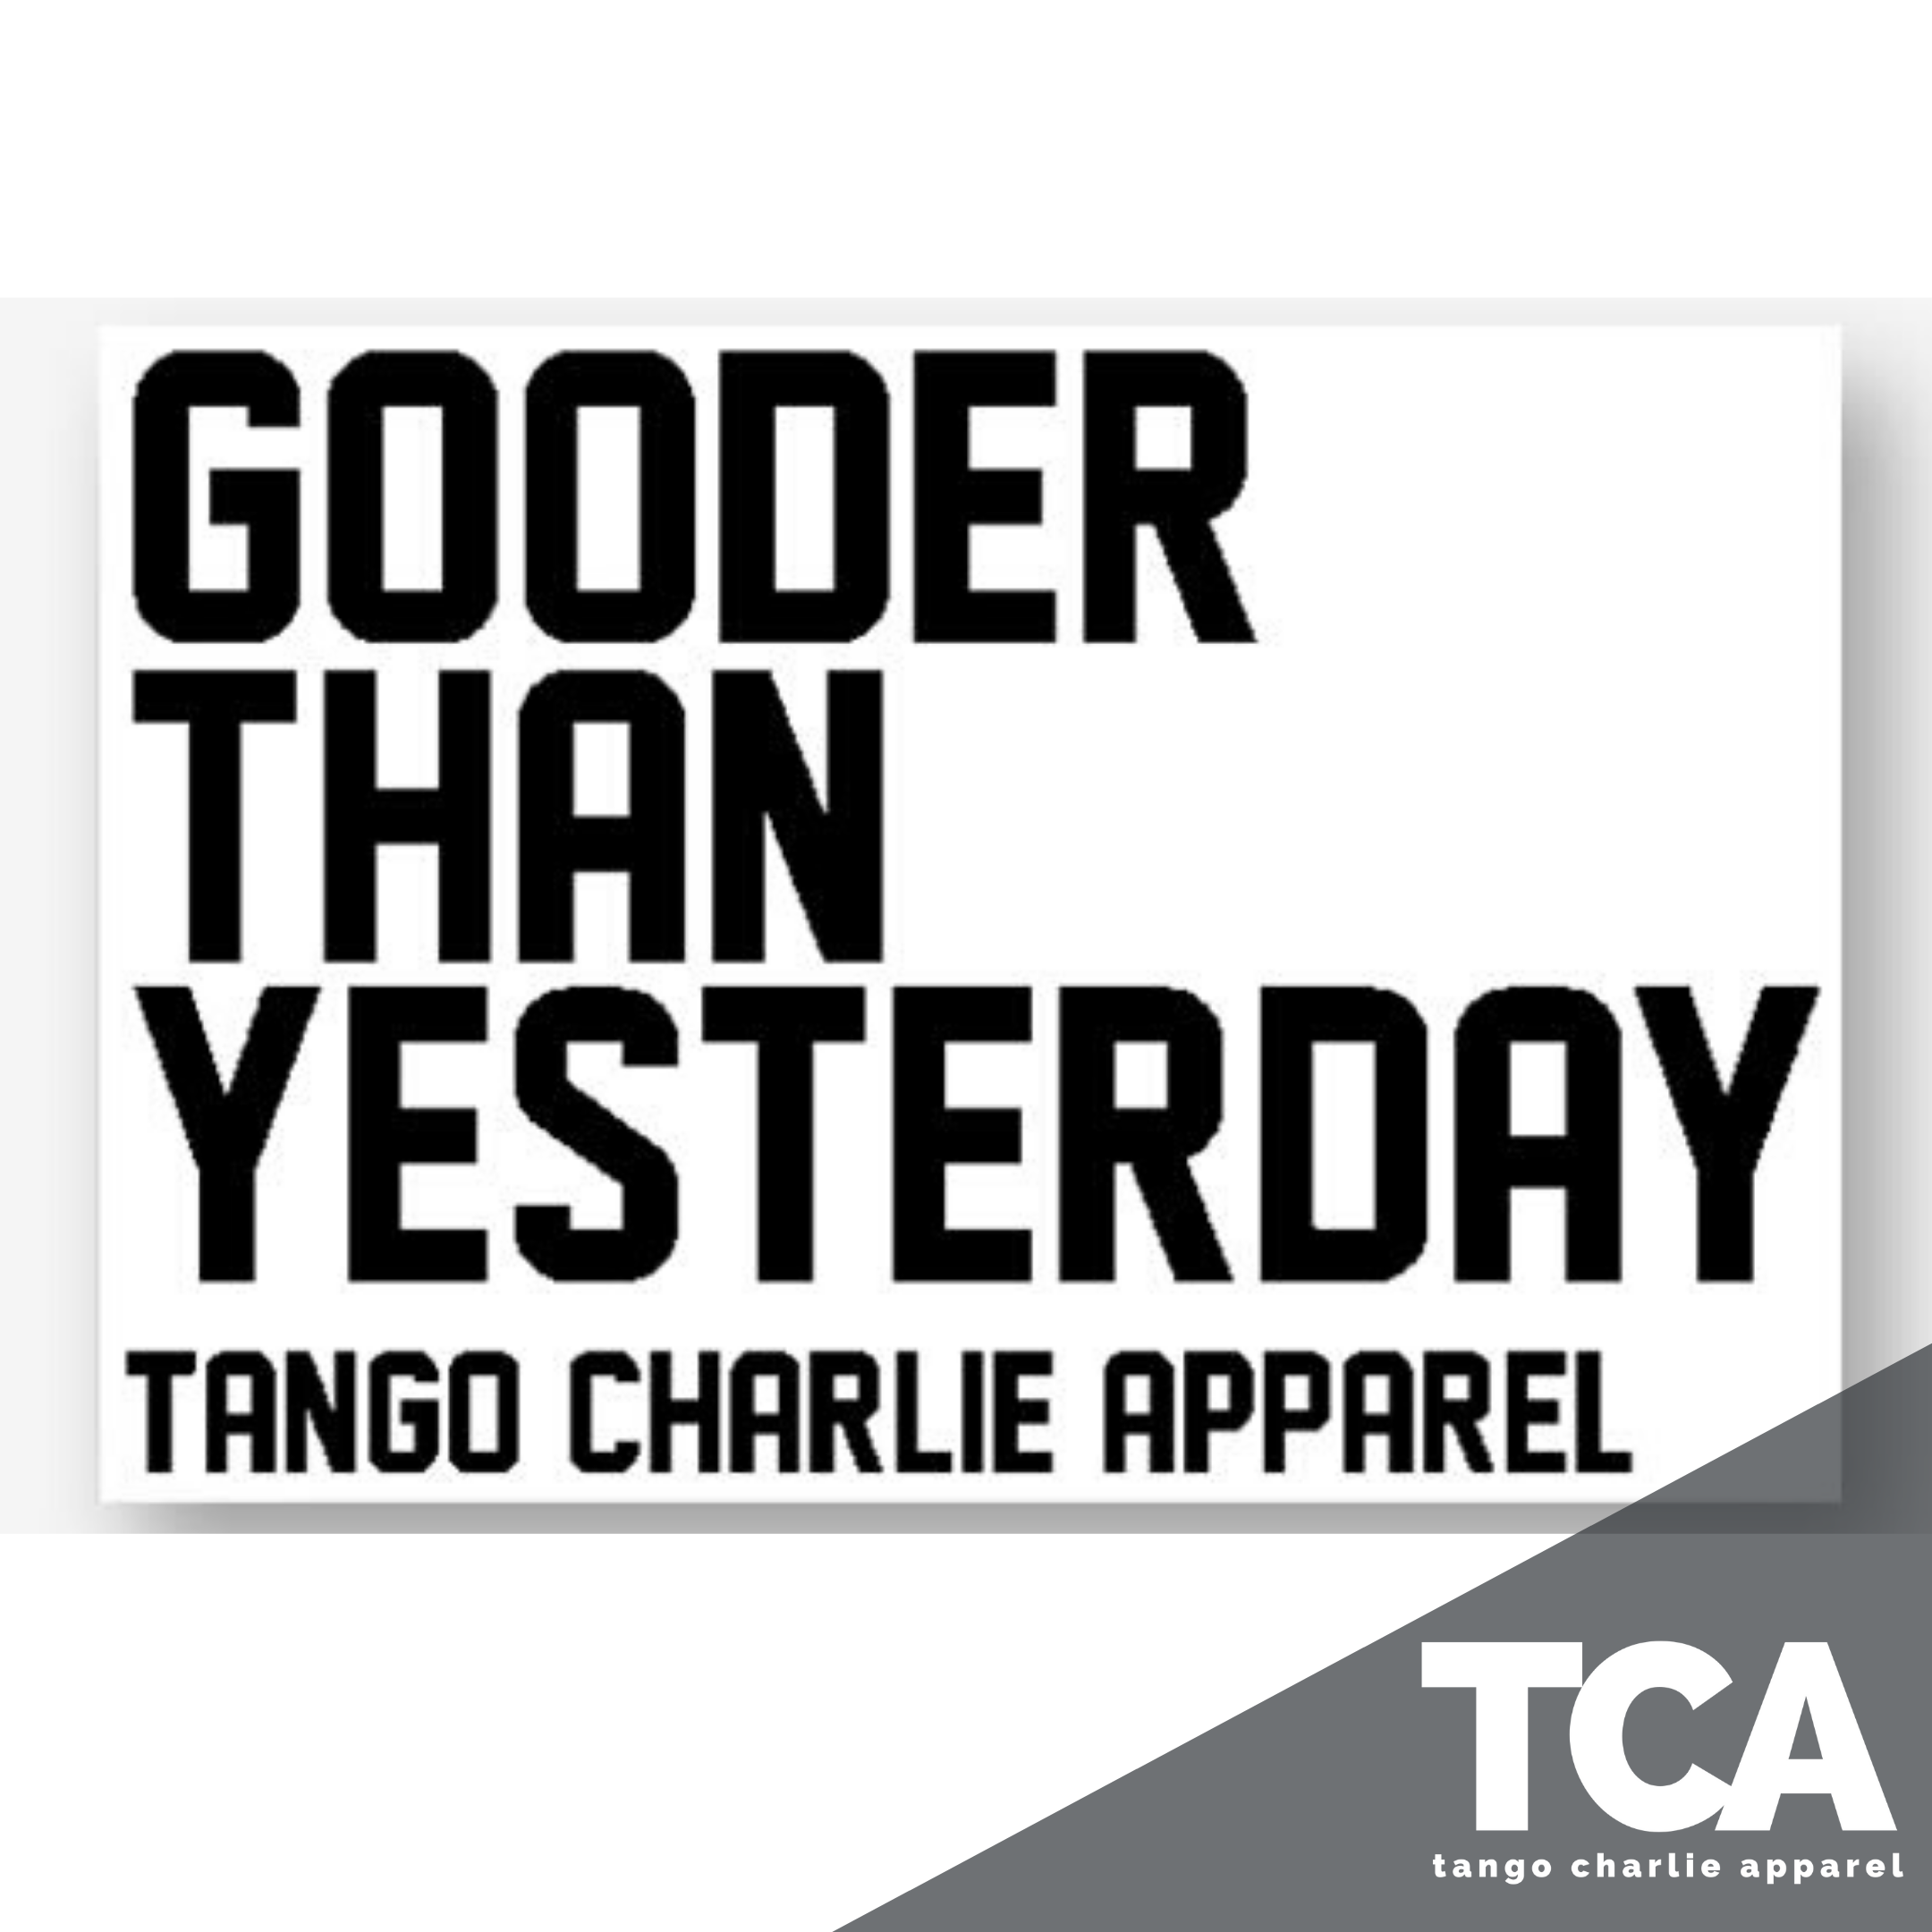 "Gooder Than Yesterday" - Sticker.